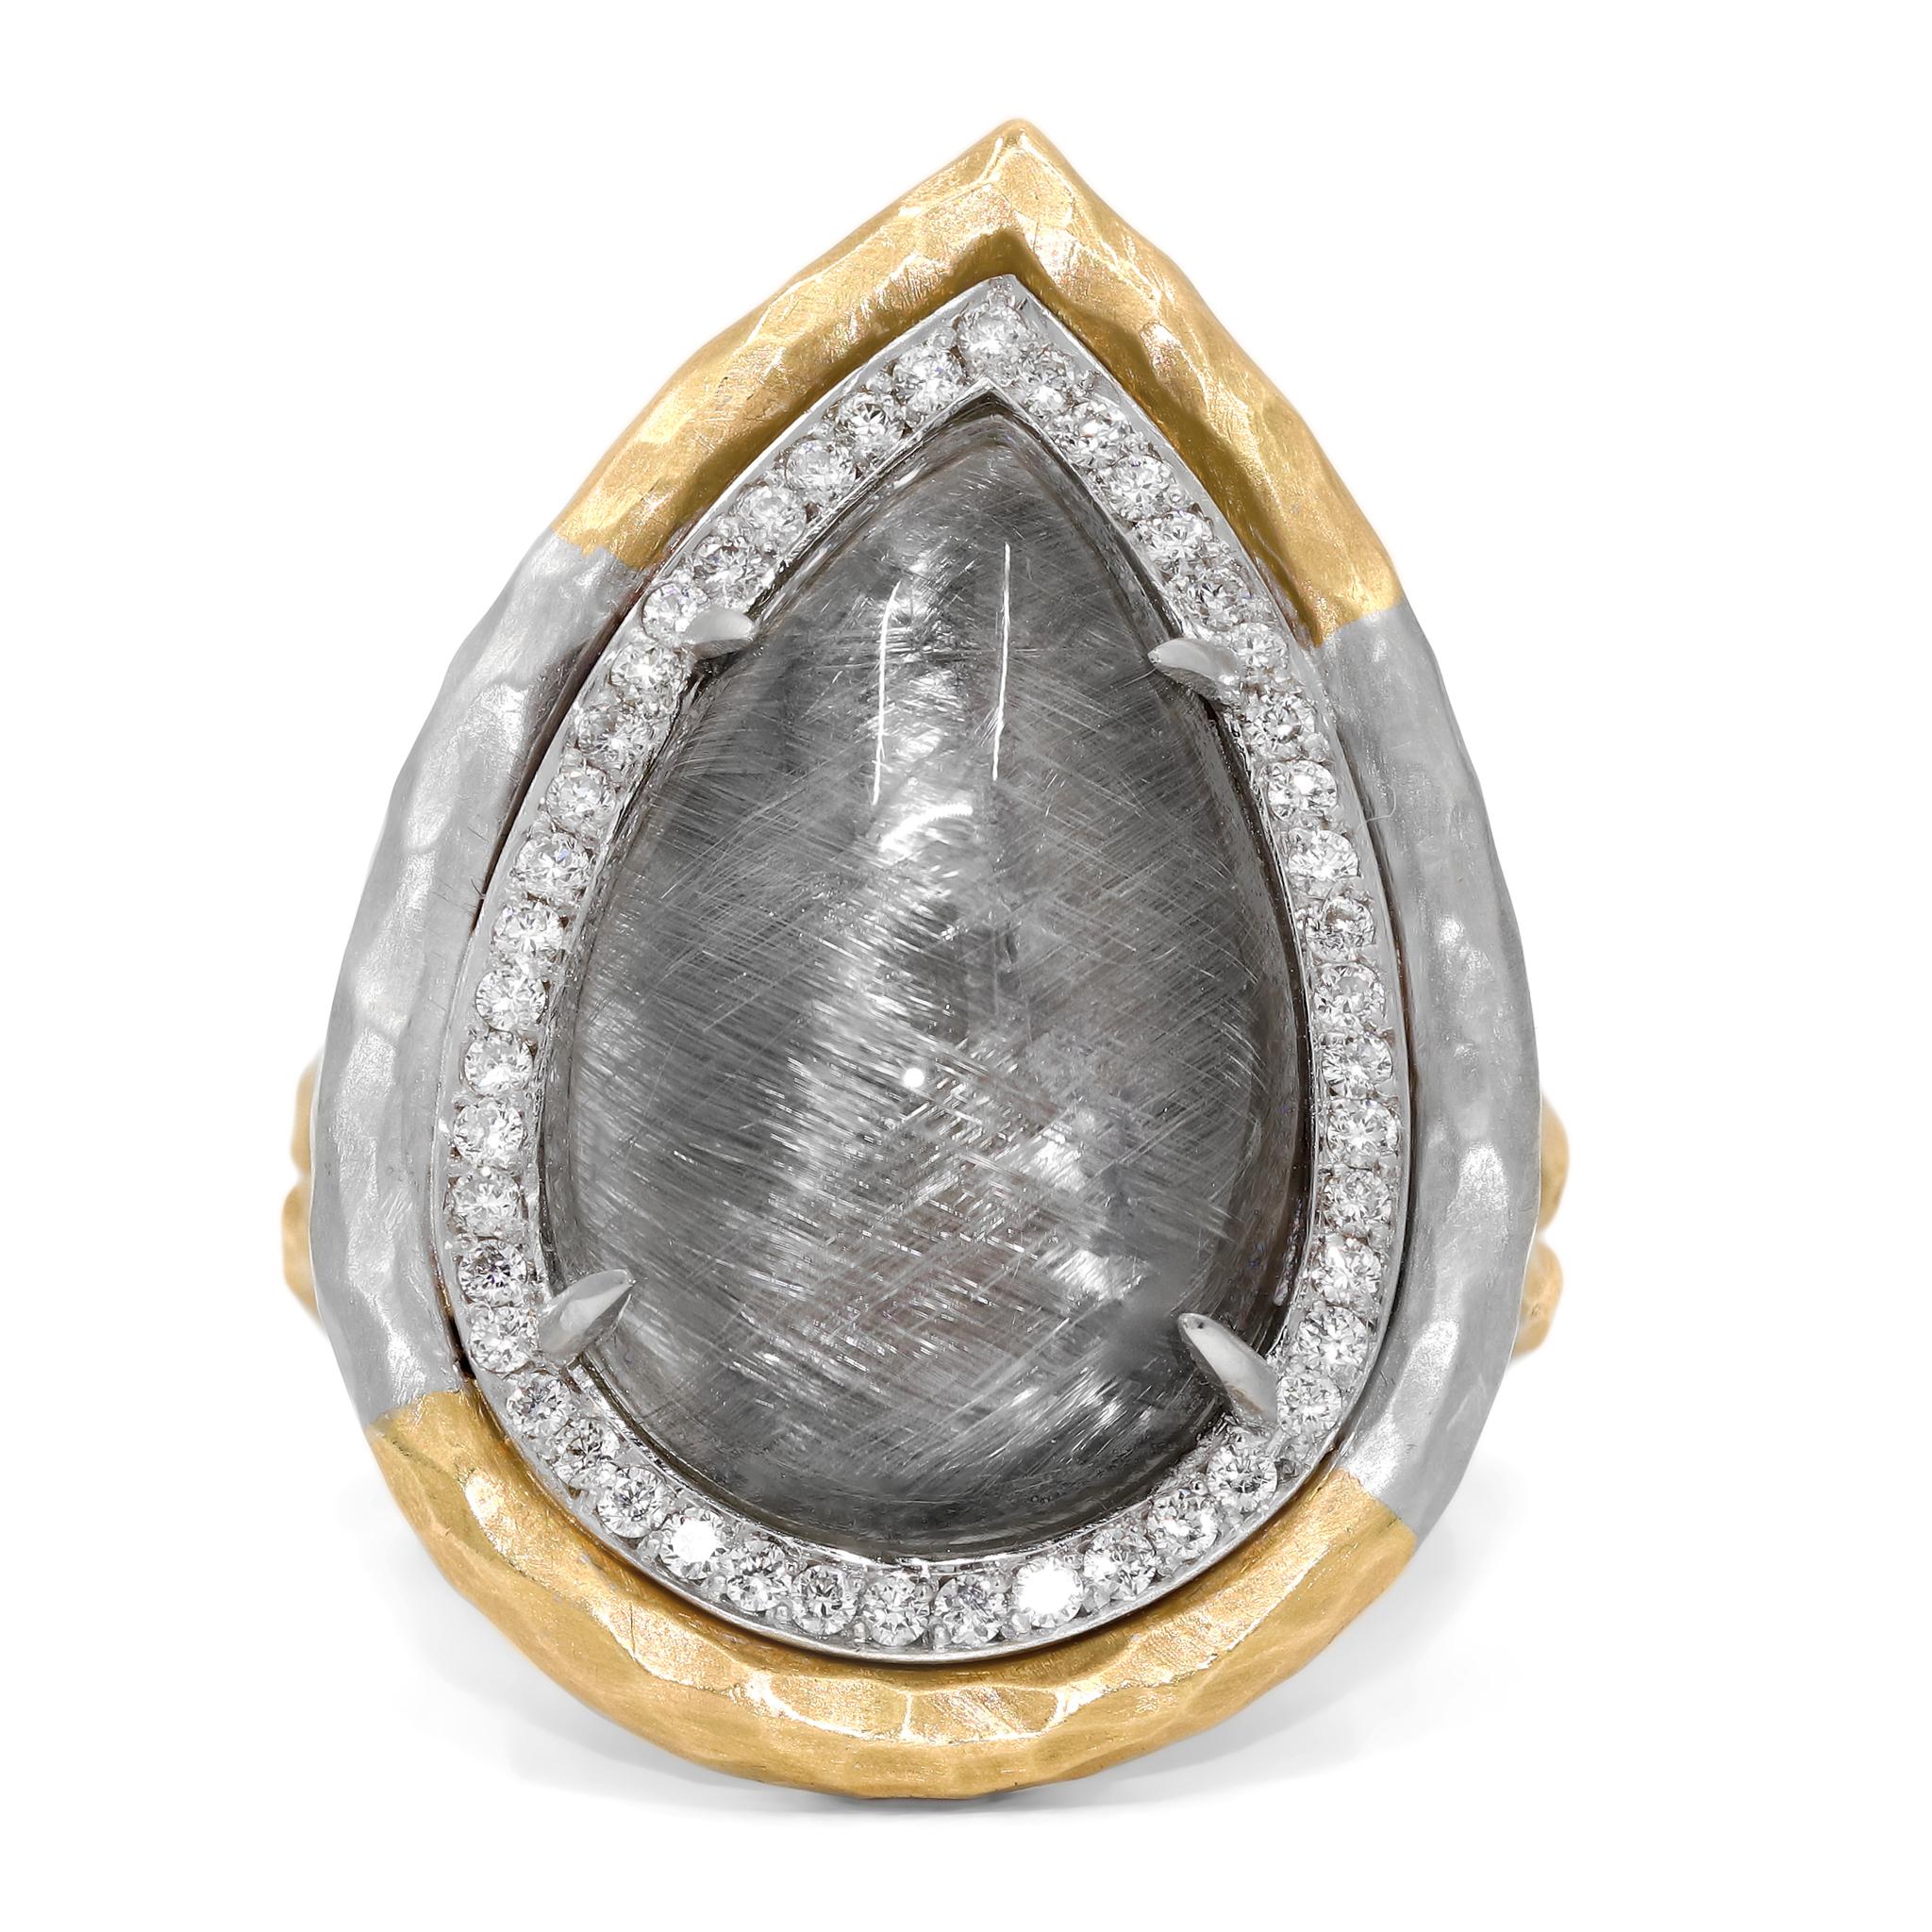 Einzigartiger Empress Ring, handgefertigt von der preisgekrönten Schmuckdesignerin Pamela Froman in ihrem unverkennbaren 